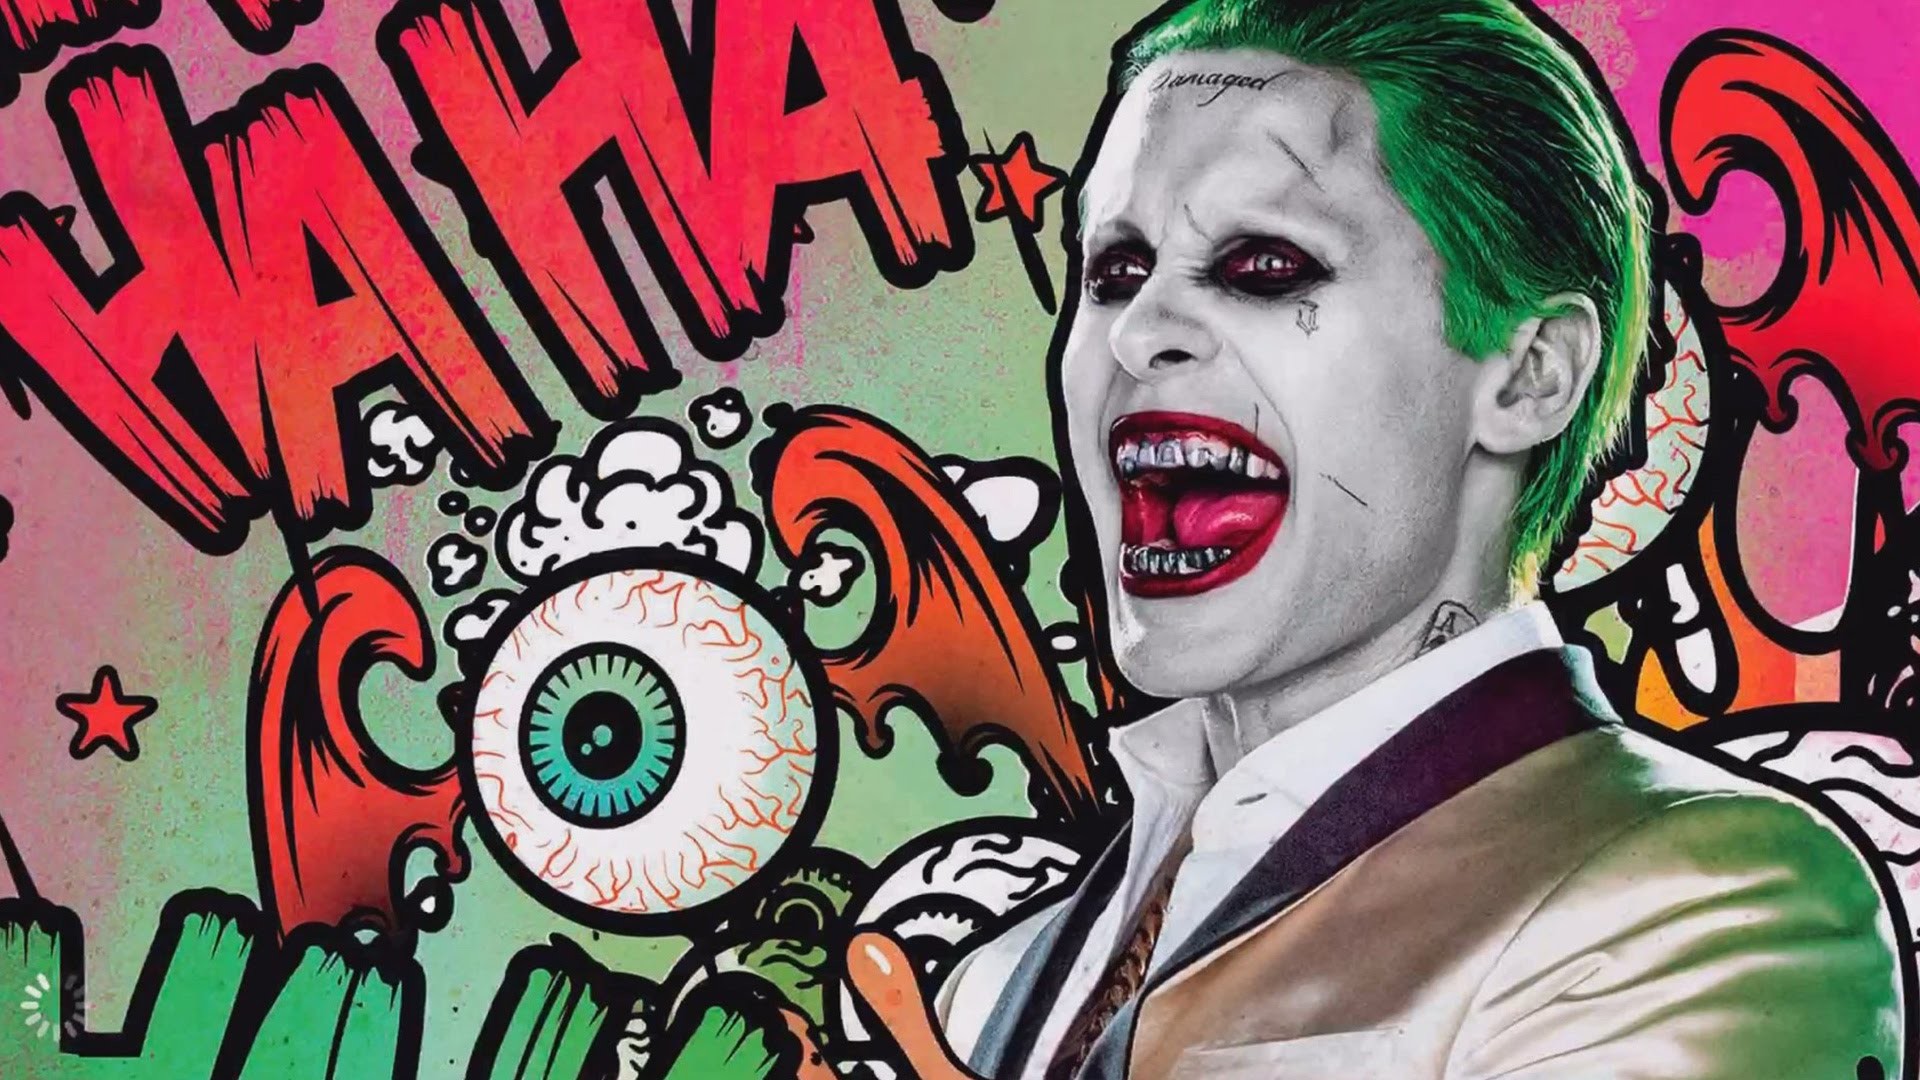 Suicide Squad – Joker VS DEADSHOT Challenge Battle Gameplay Pt 15 Injustice Gods Among Us